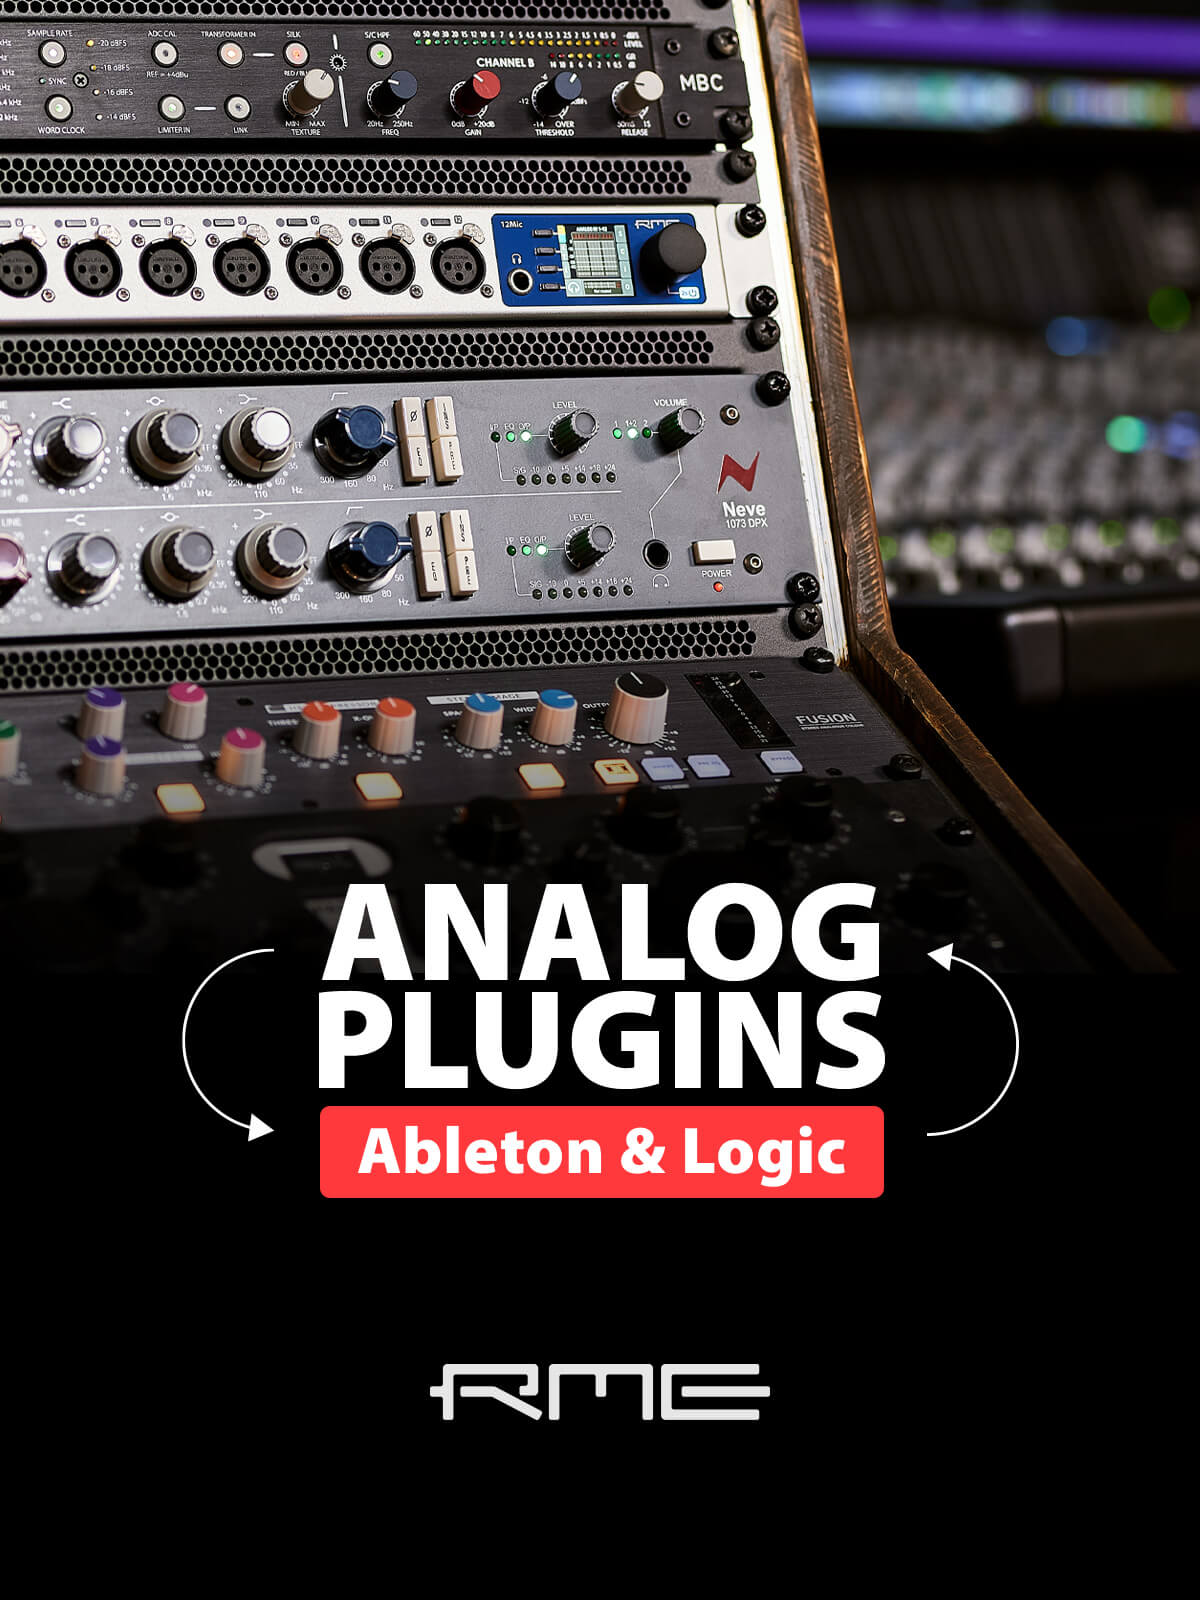 Analog Plugins in Ableton or Logic